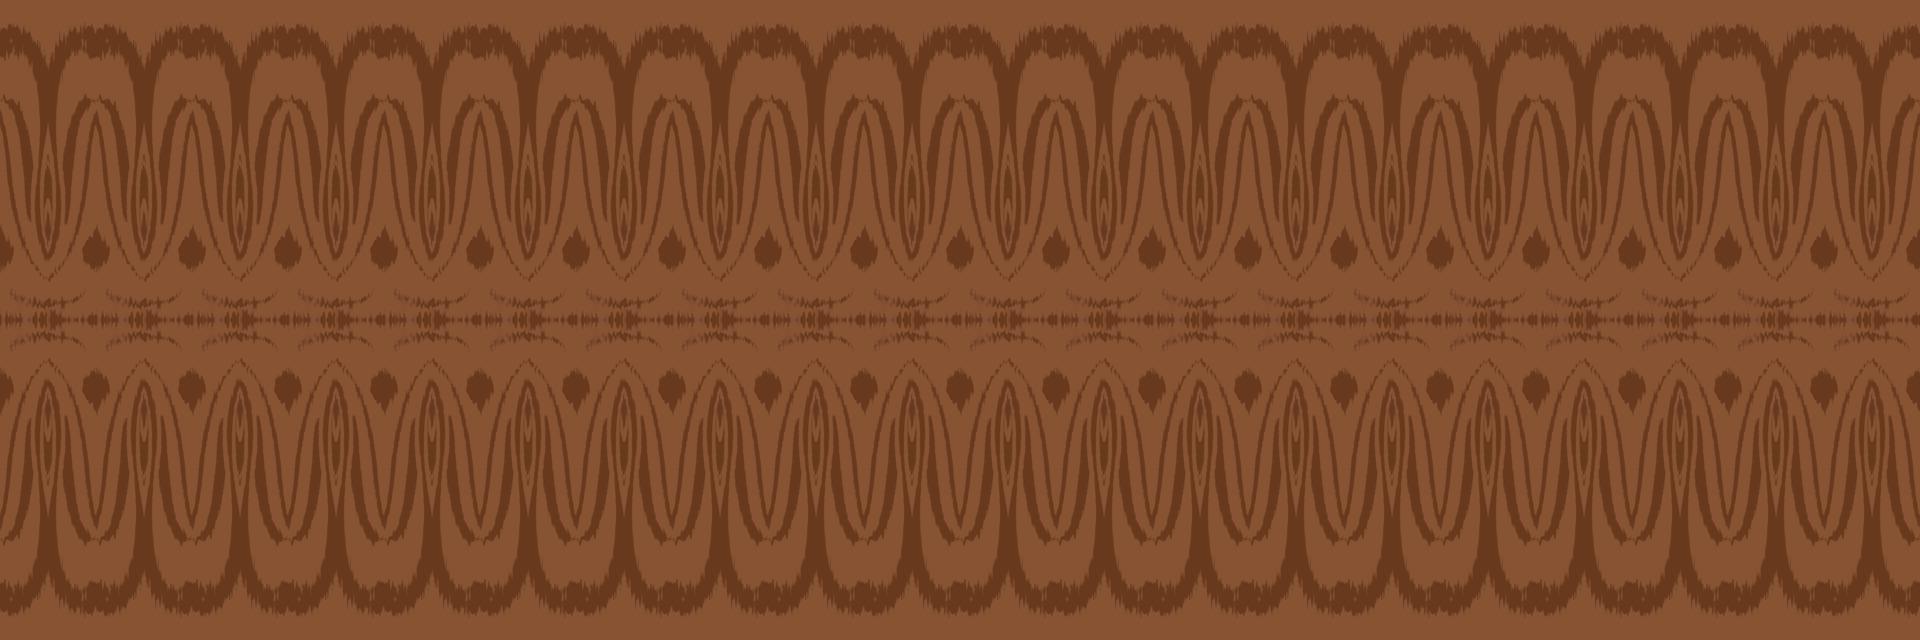 batik têxtil ikkat ou ikat listras padrão sem costura design de vetor digital para impressão saree kurti borneo tecido borda escova símbolos amostras algodão